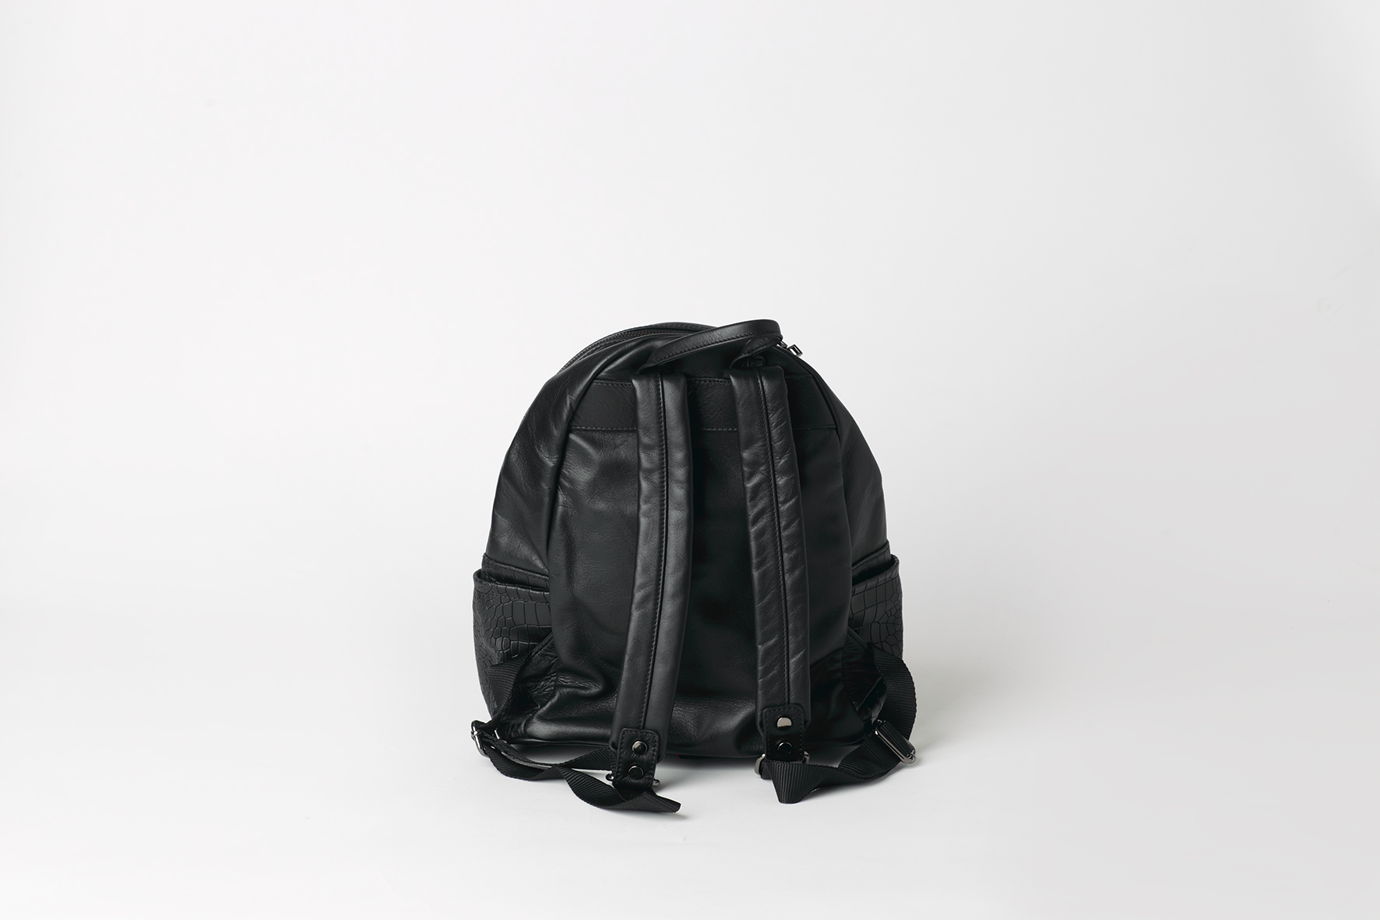 Черный кожаный рюкзак на подкладке - LACERTA - real leather backpack. В наличии в Москве